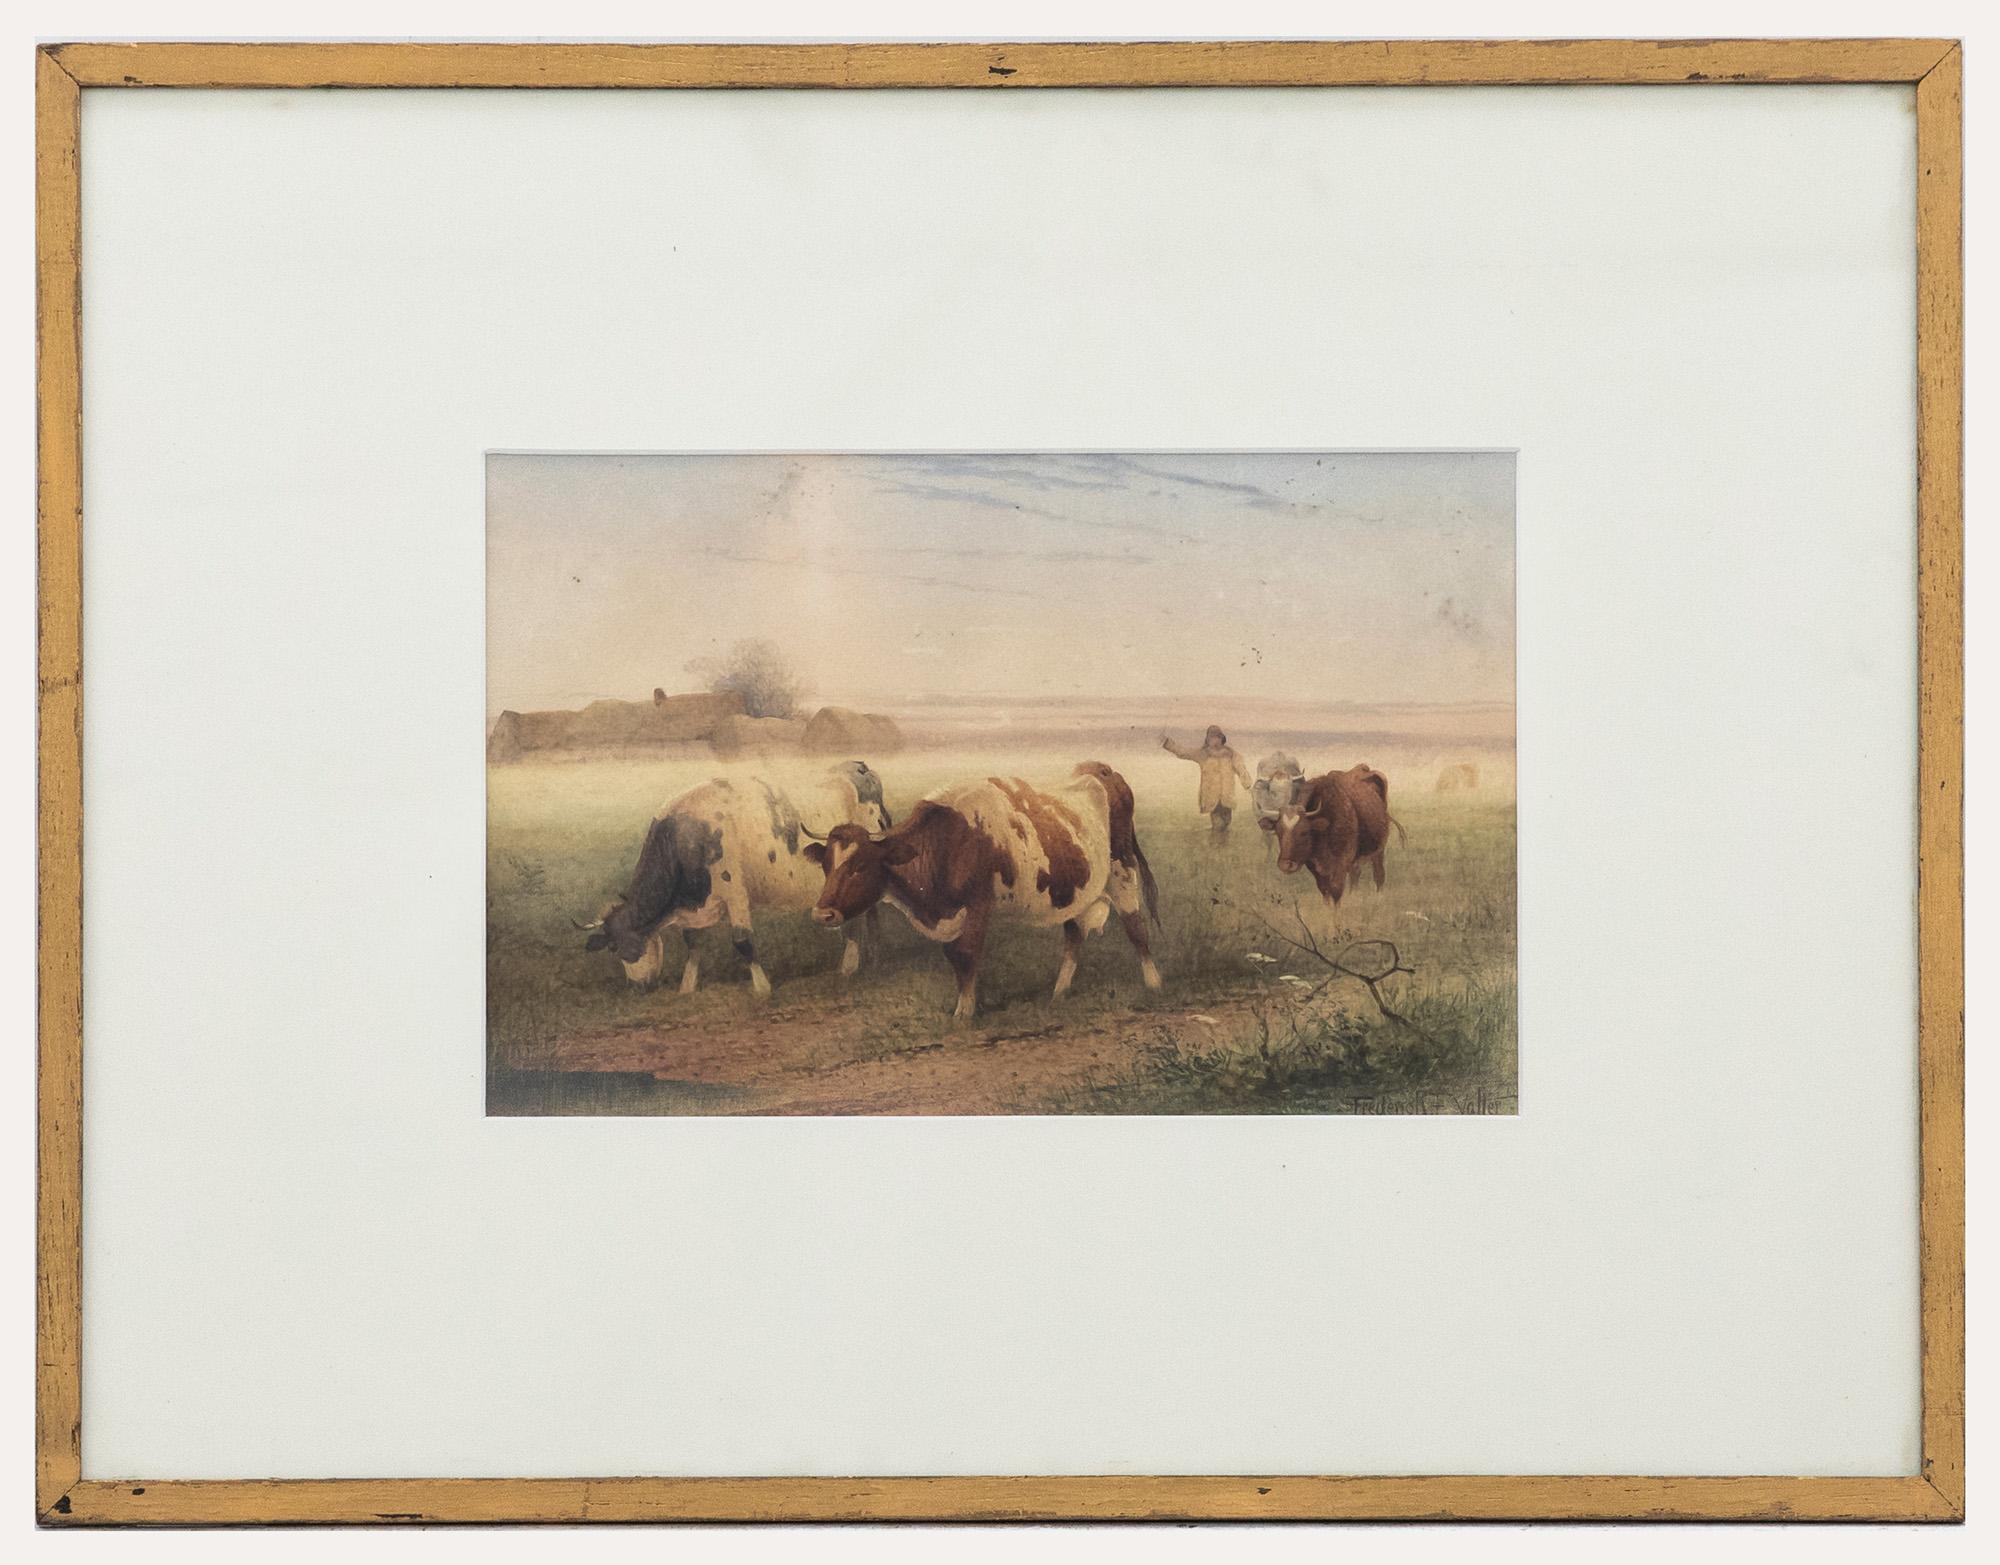 Frederick E Valter (1860-1930) - Aquarelle encadrée, avec vaches pour le marché